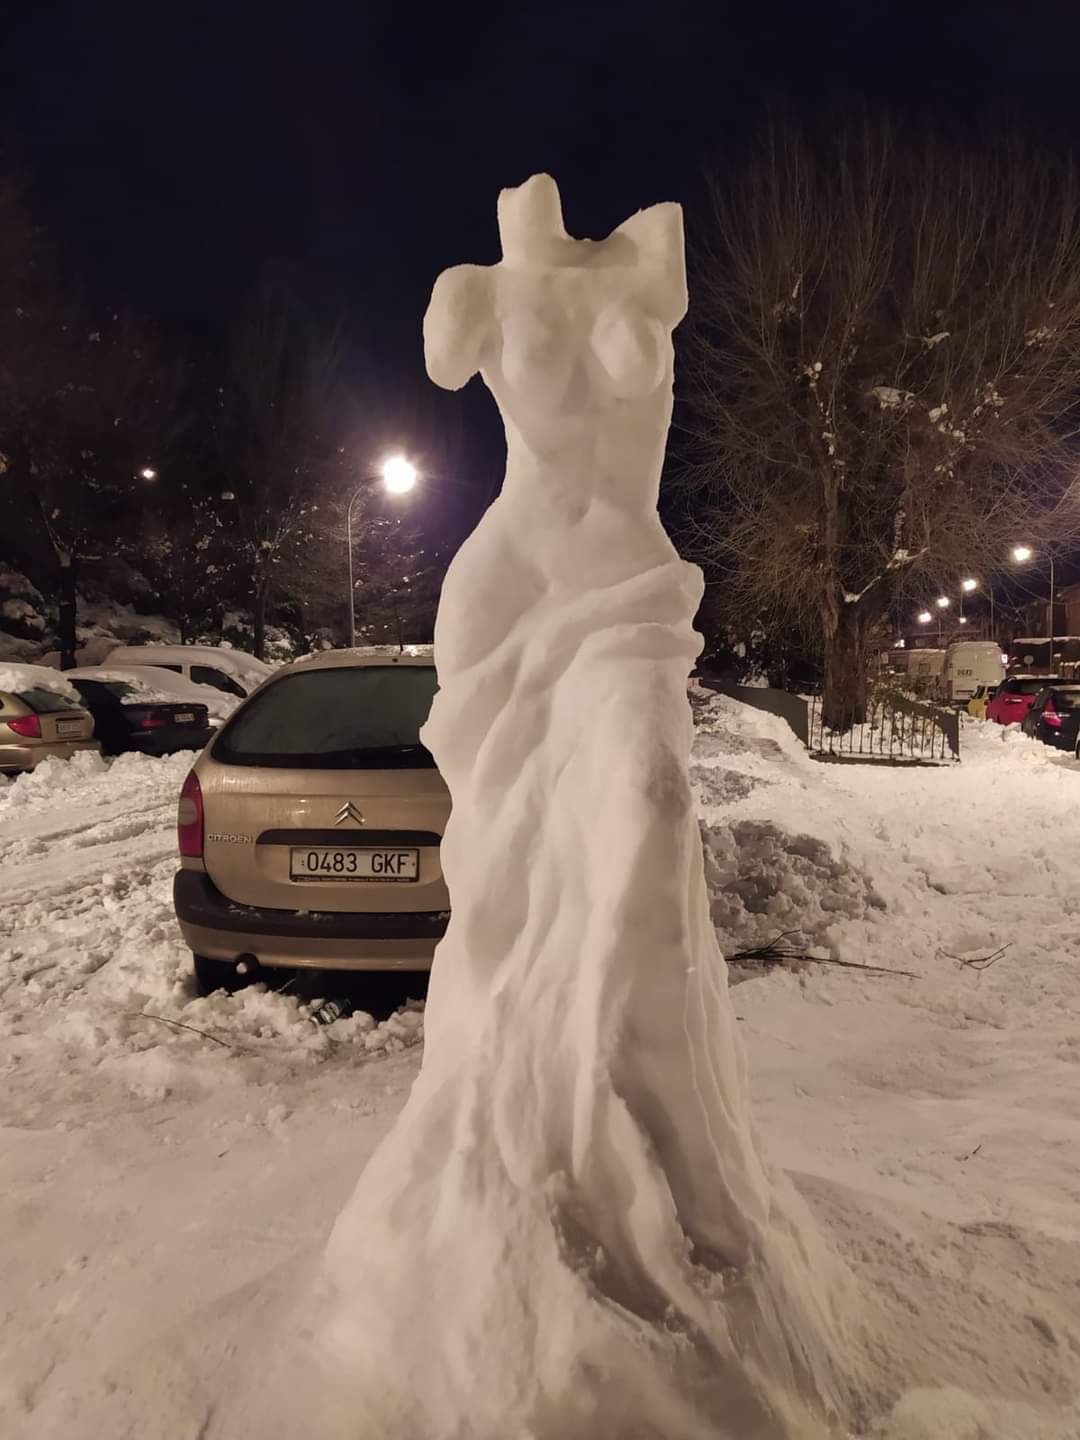 escultura de nieve